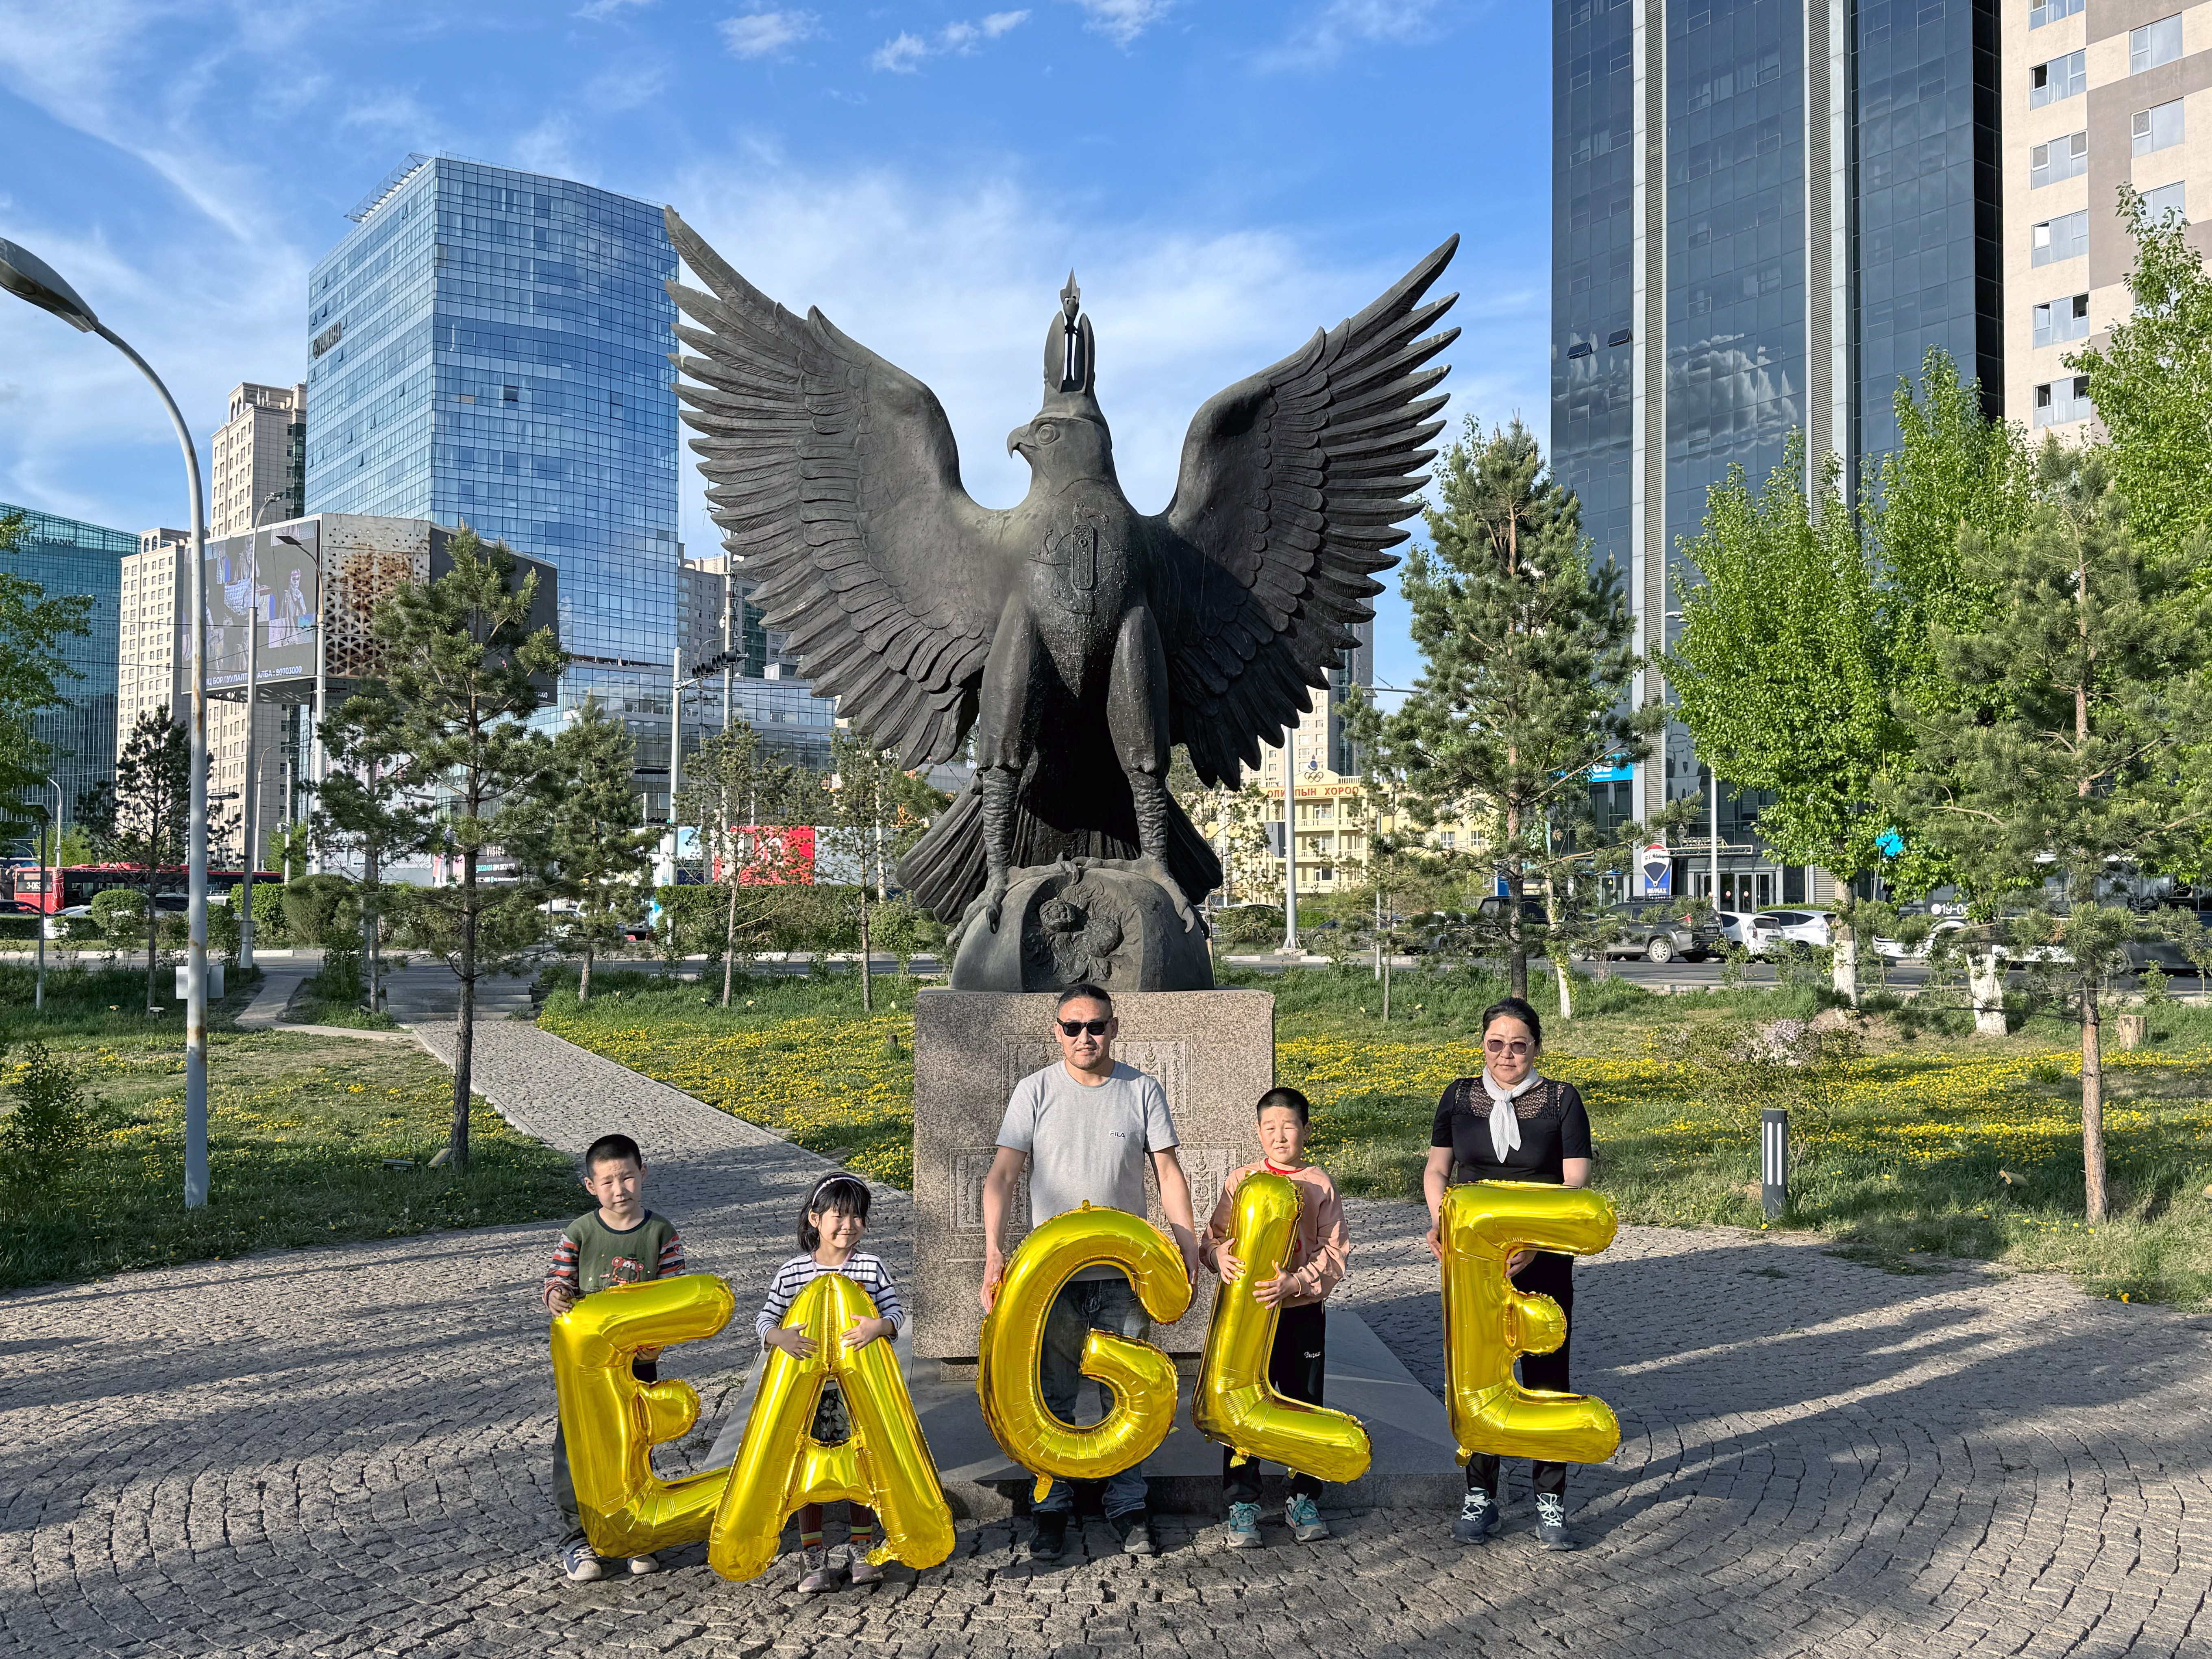 Mongolia, Ulaanbaatar, Bogd Khan Palace Museum Park (Богд хааны ордон музейн цэцэрлэгт хүрээлэн) - Eagle, Silence Was Golden, gold balloons